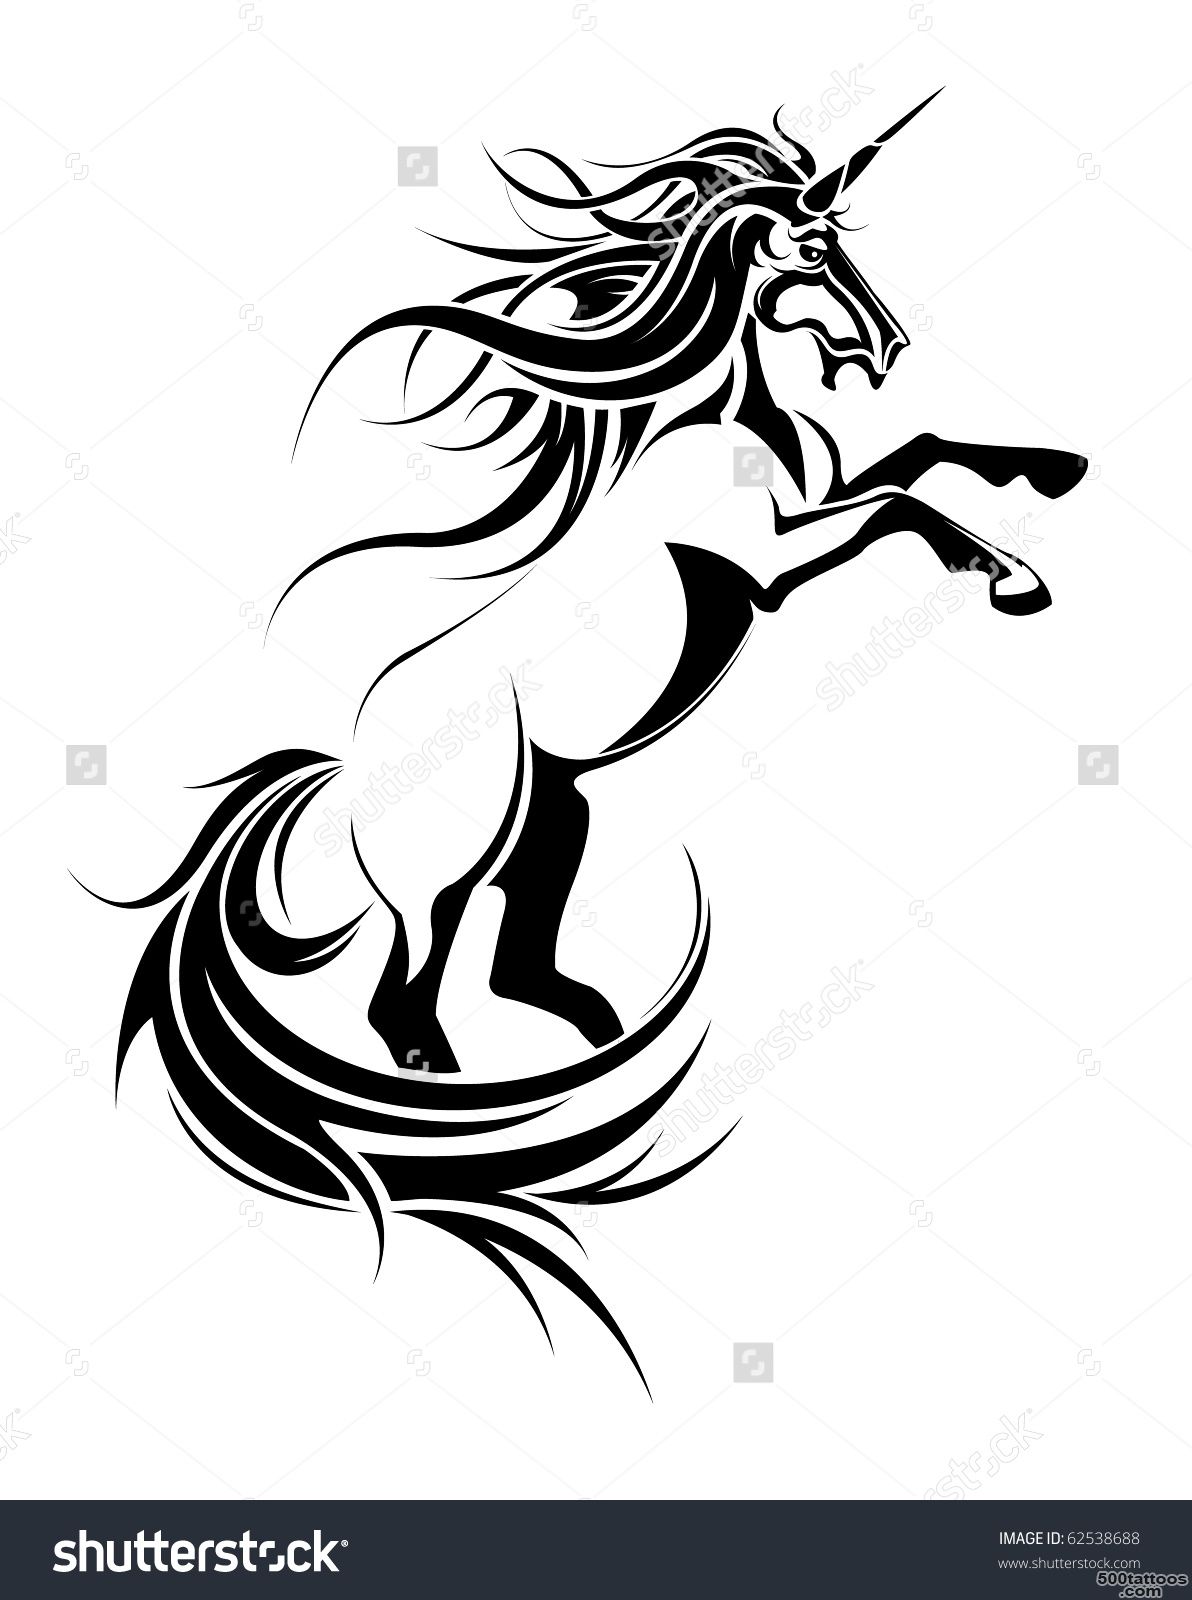 Unicorn Tattoo Stock Vector Illustration 62538688  Shutterstock_37